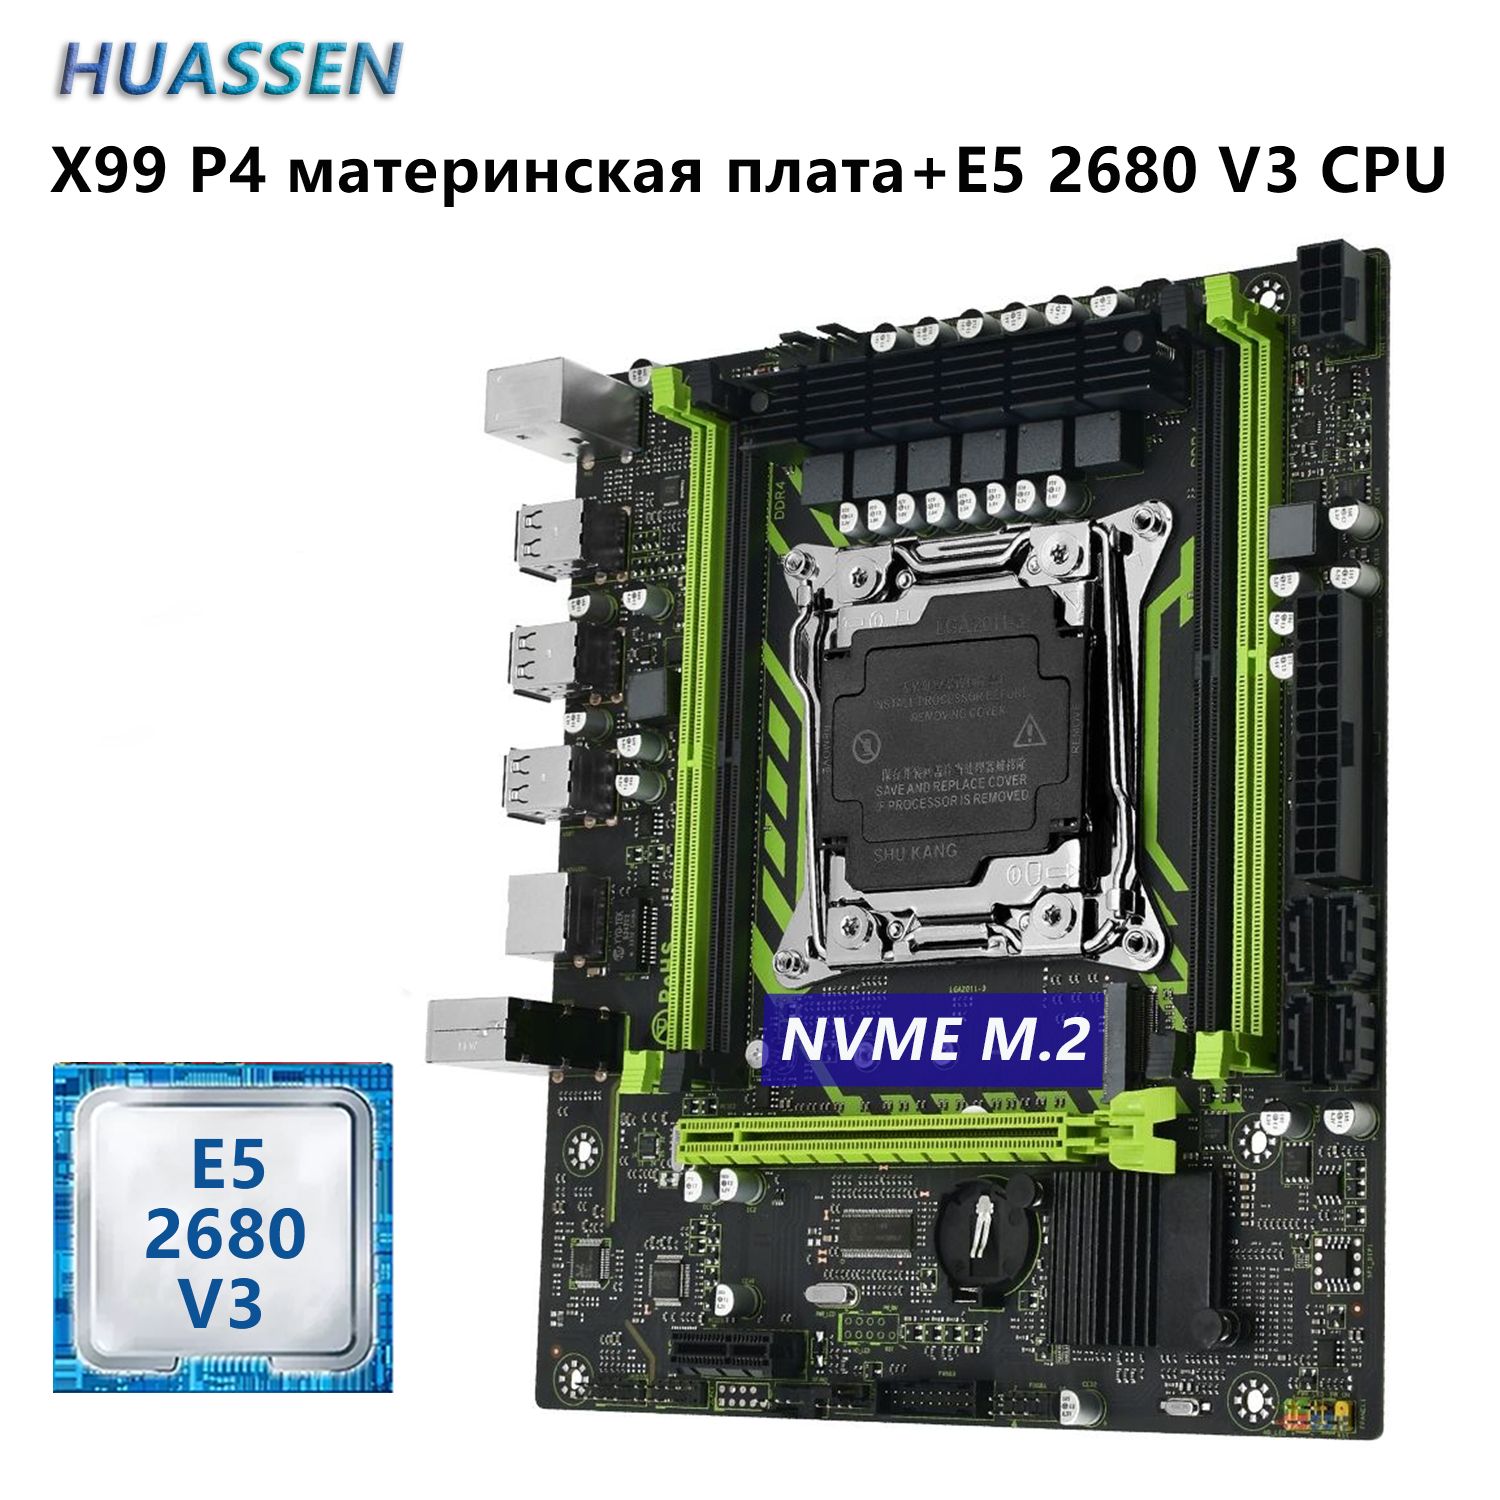 HUASSENМатеринскаяплатаX99P4материнскаяплата+XeonE52680V3CPU2,5ГГц(12ядер/24потока)